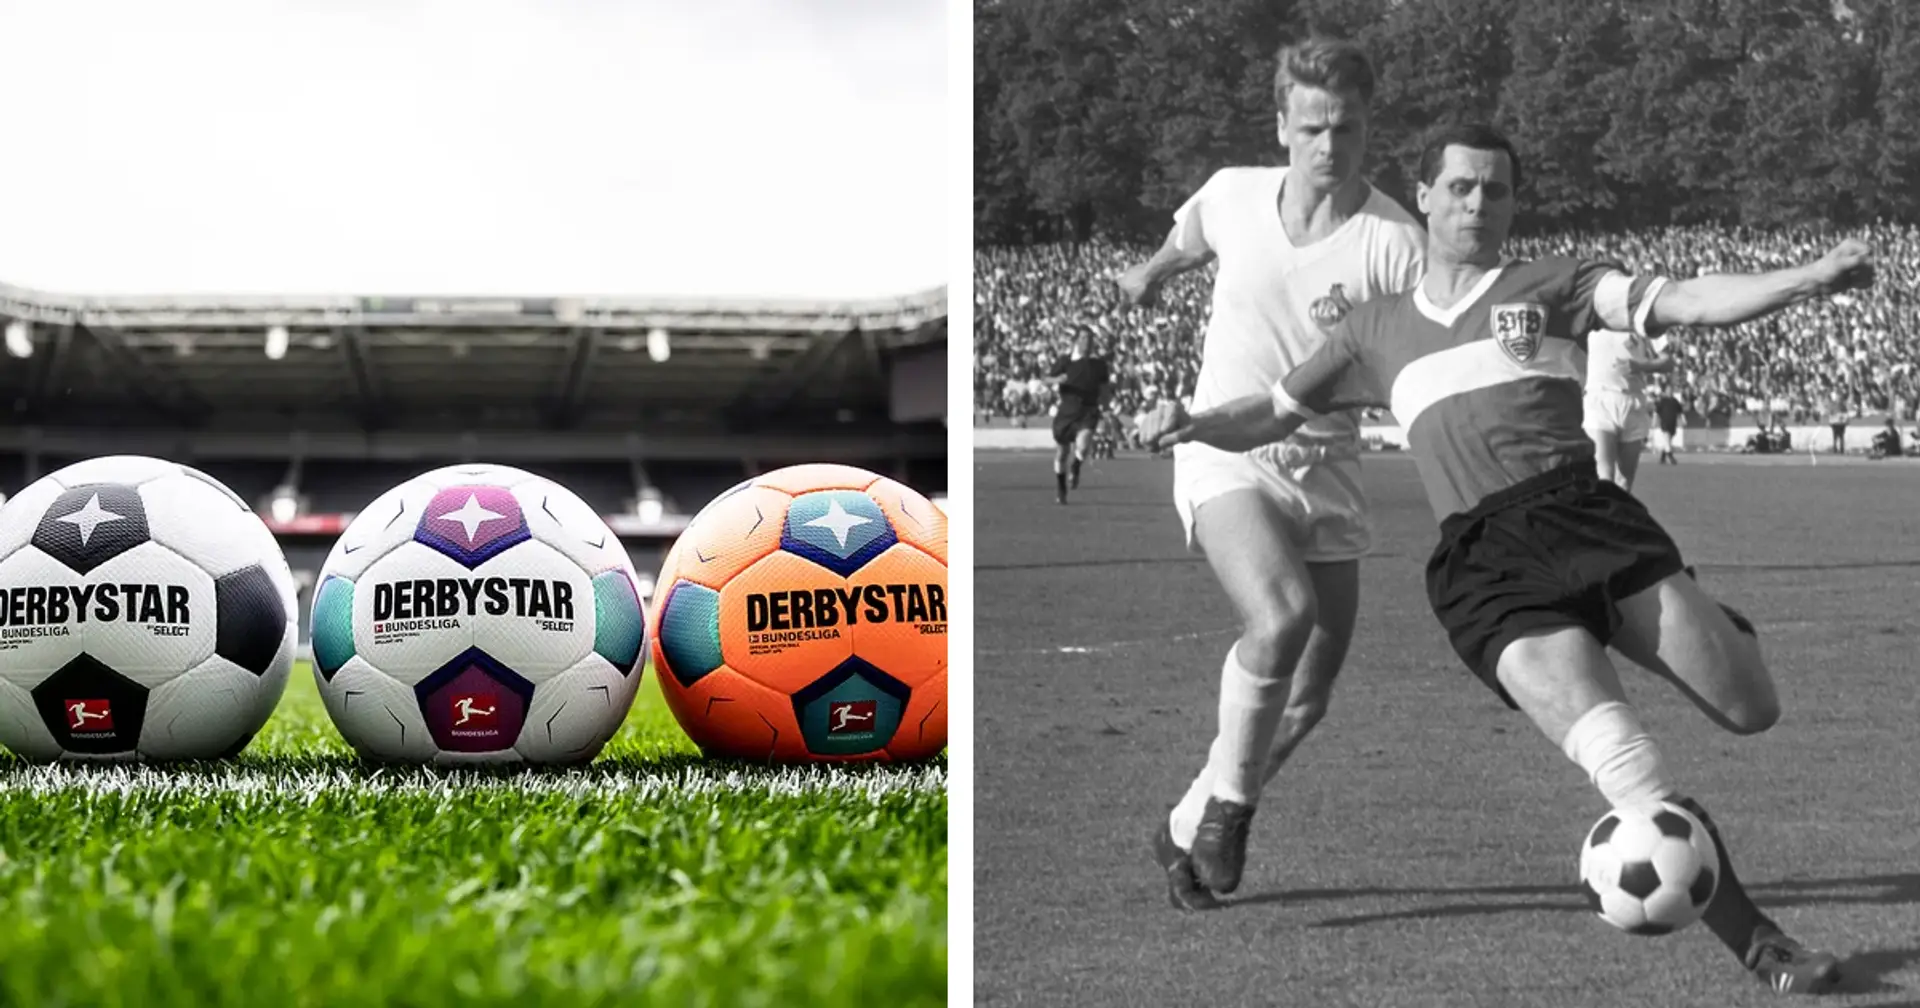 Der neue offizielle Spielball wurde vorgestellt: Das Design lässt sich von 60 Jahren Bundesliga inspirieren